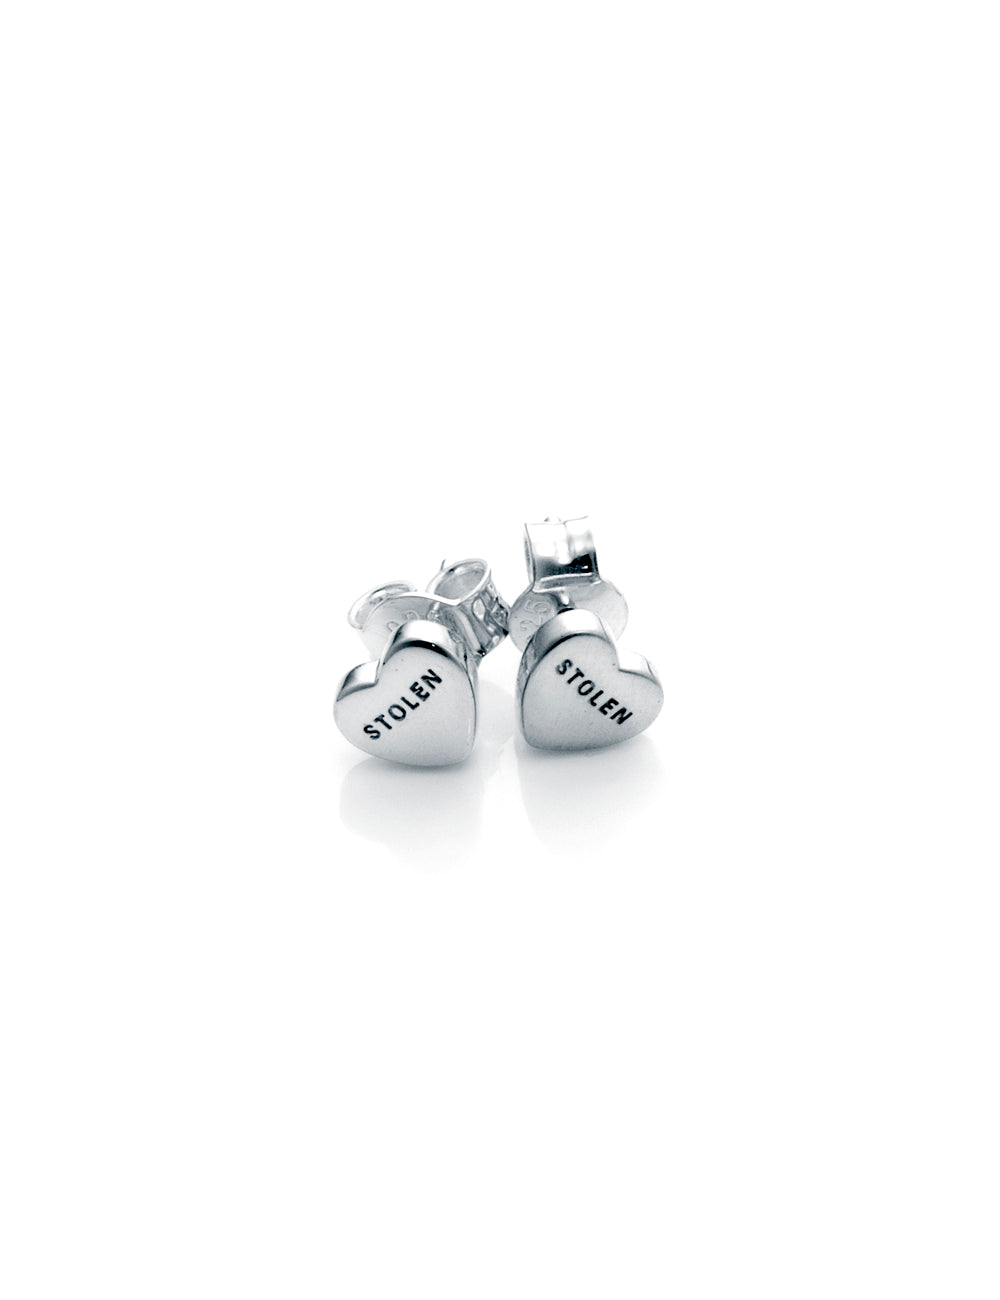 SGC Heart Earrings